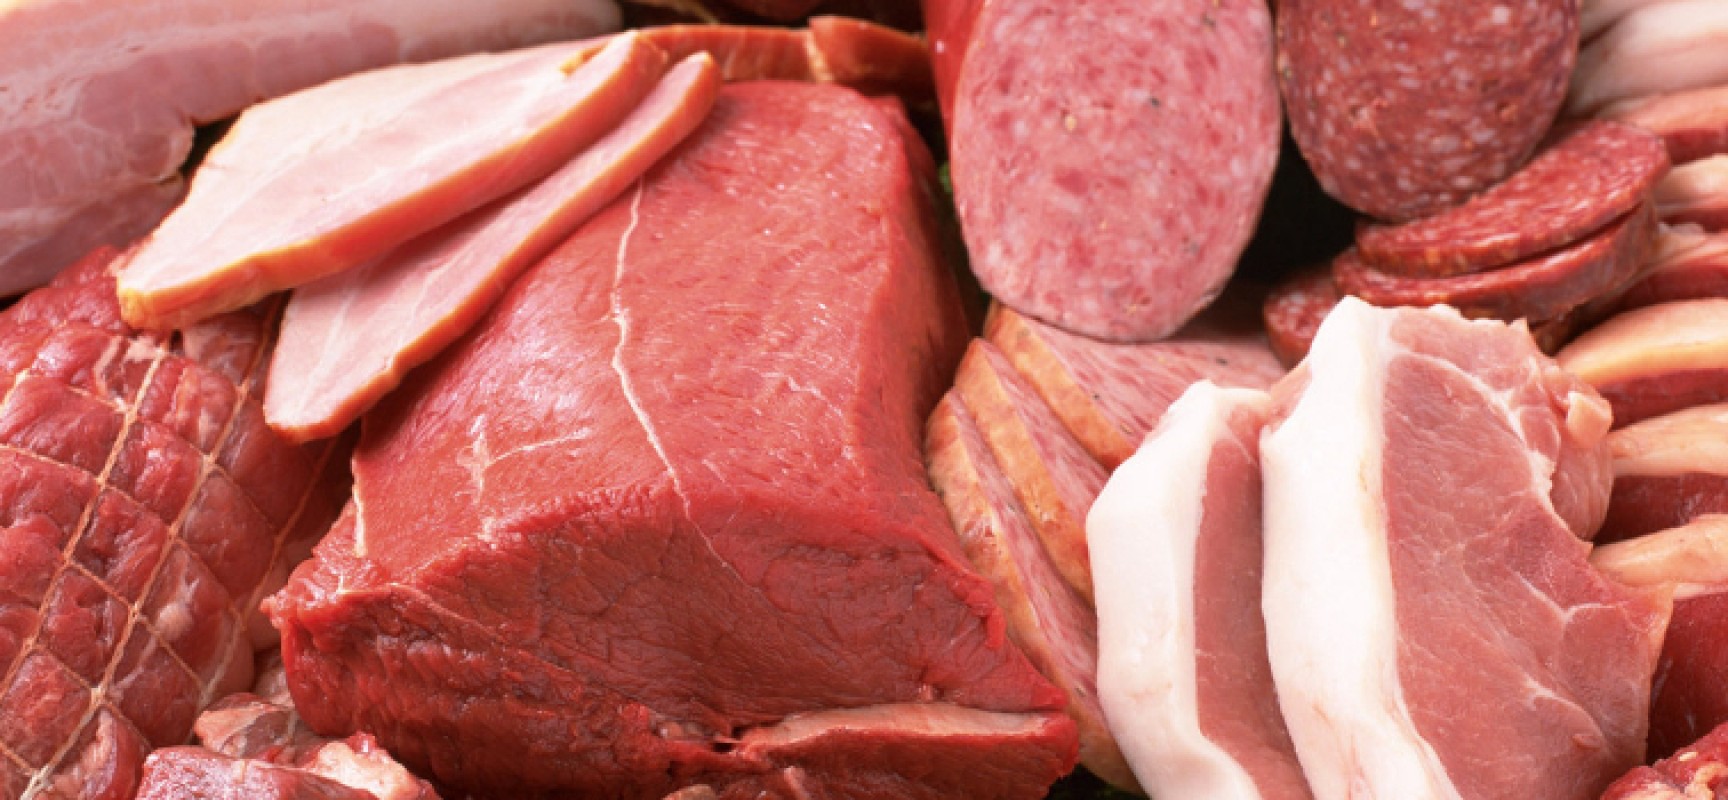 Carni rosse, macellai Bari e Bat: “Non siamo preoccupati, sappiamo ciò che vendiamo”